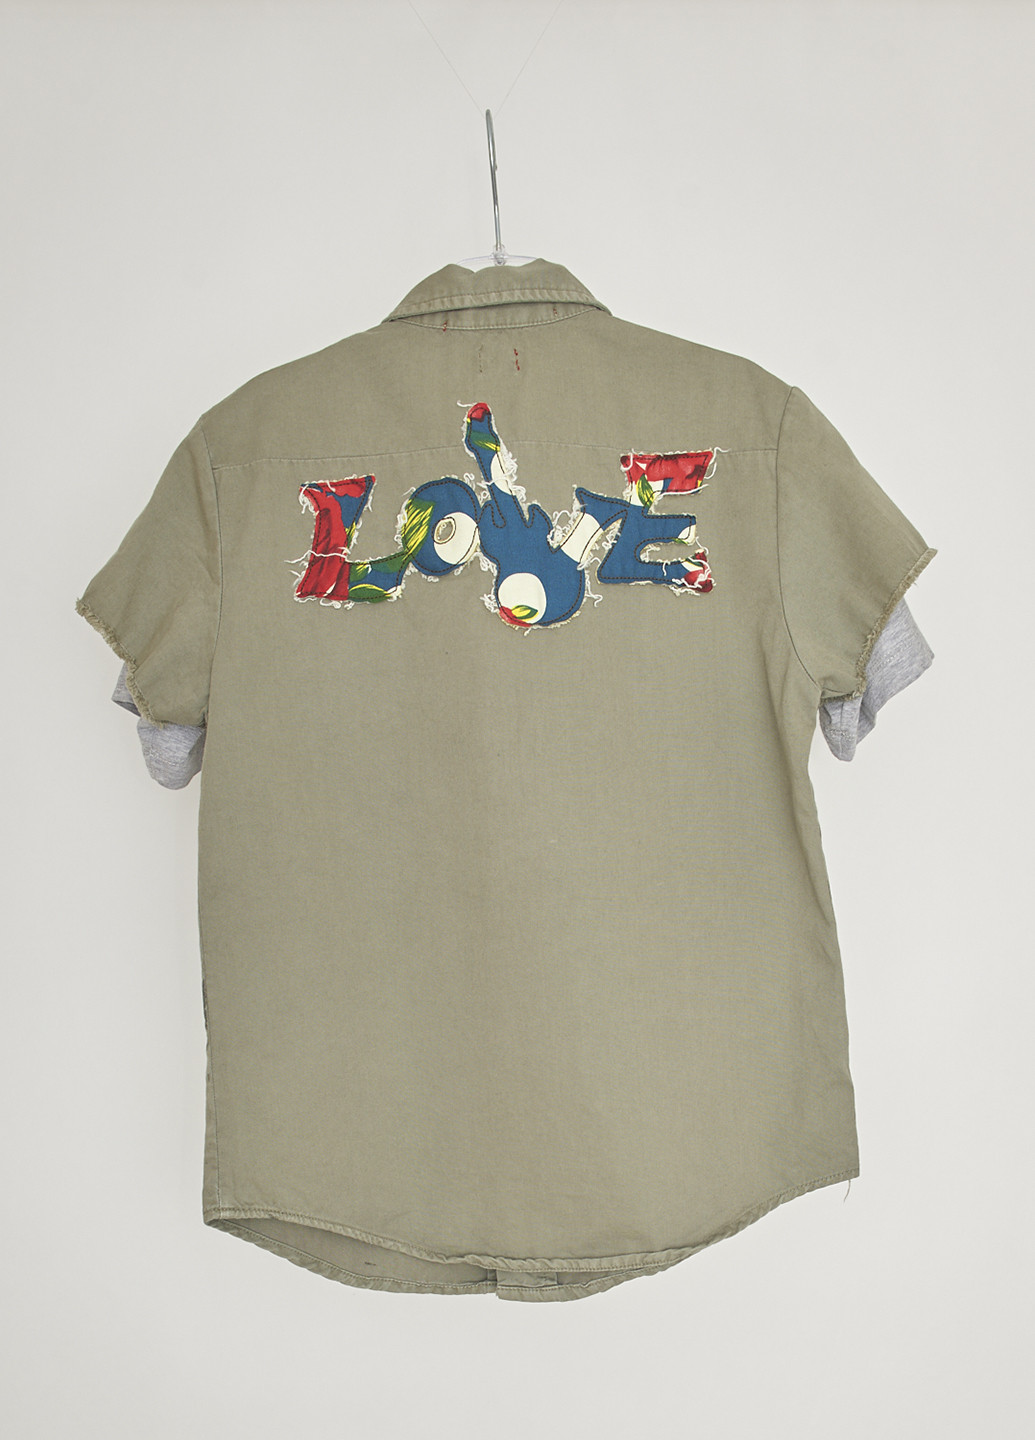 Оливковковая (хаки) кэжуал рубашка с абстрактным узором Ra-Re